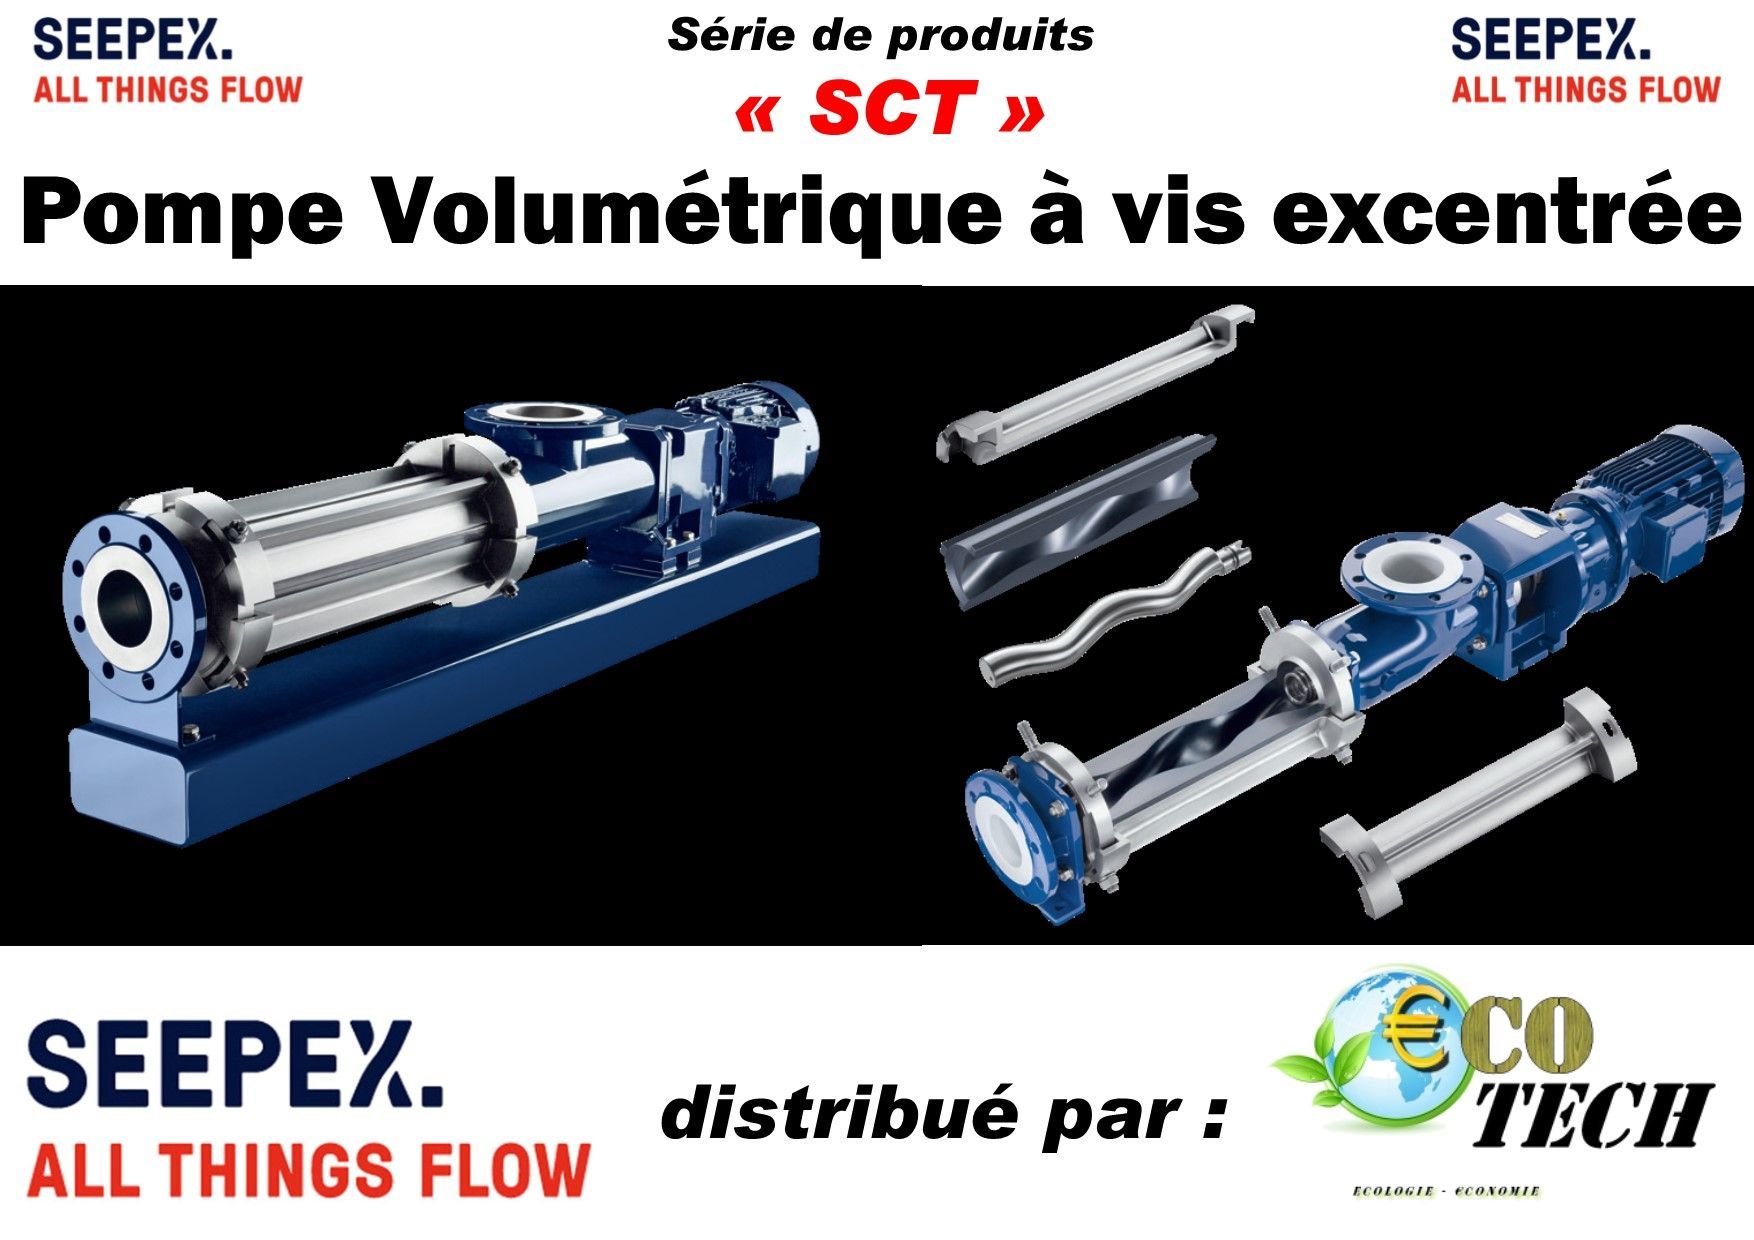 Seepex série sct - pompe volumetrique a vis excentree_0